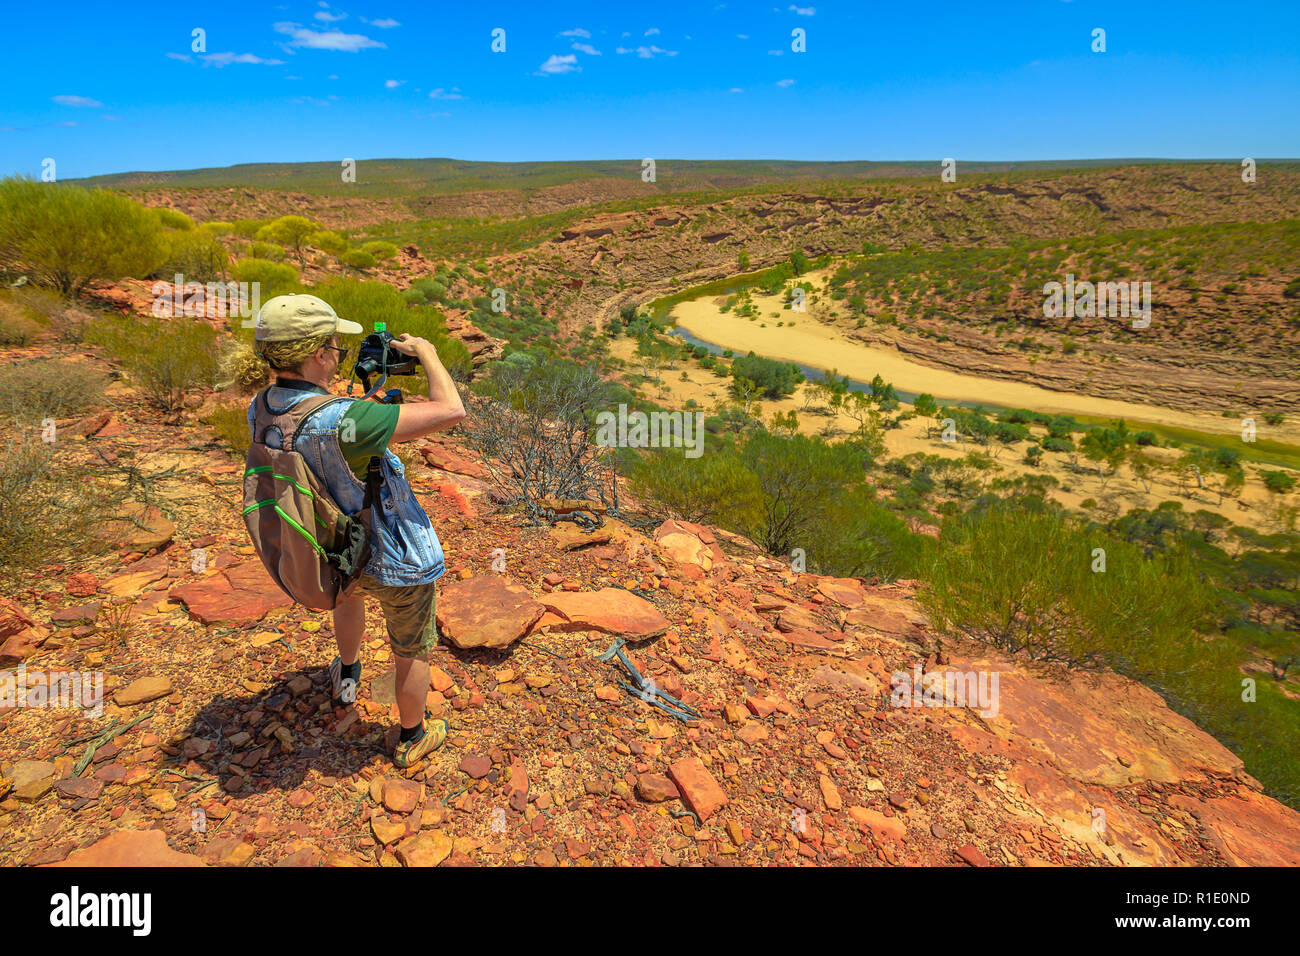 Fotografo di viaggio zaino in spalla con lo stabilizzatore ha girato a Murchison River Gorge in Kalbarri National Park, Australia occidentale. Videomaker professionale con fotocamera scatta foto in outback australiano. Foto Stock